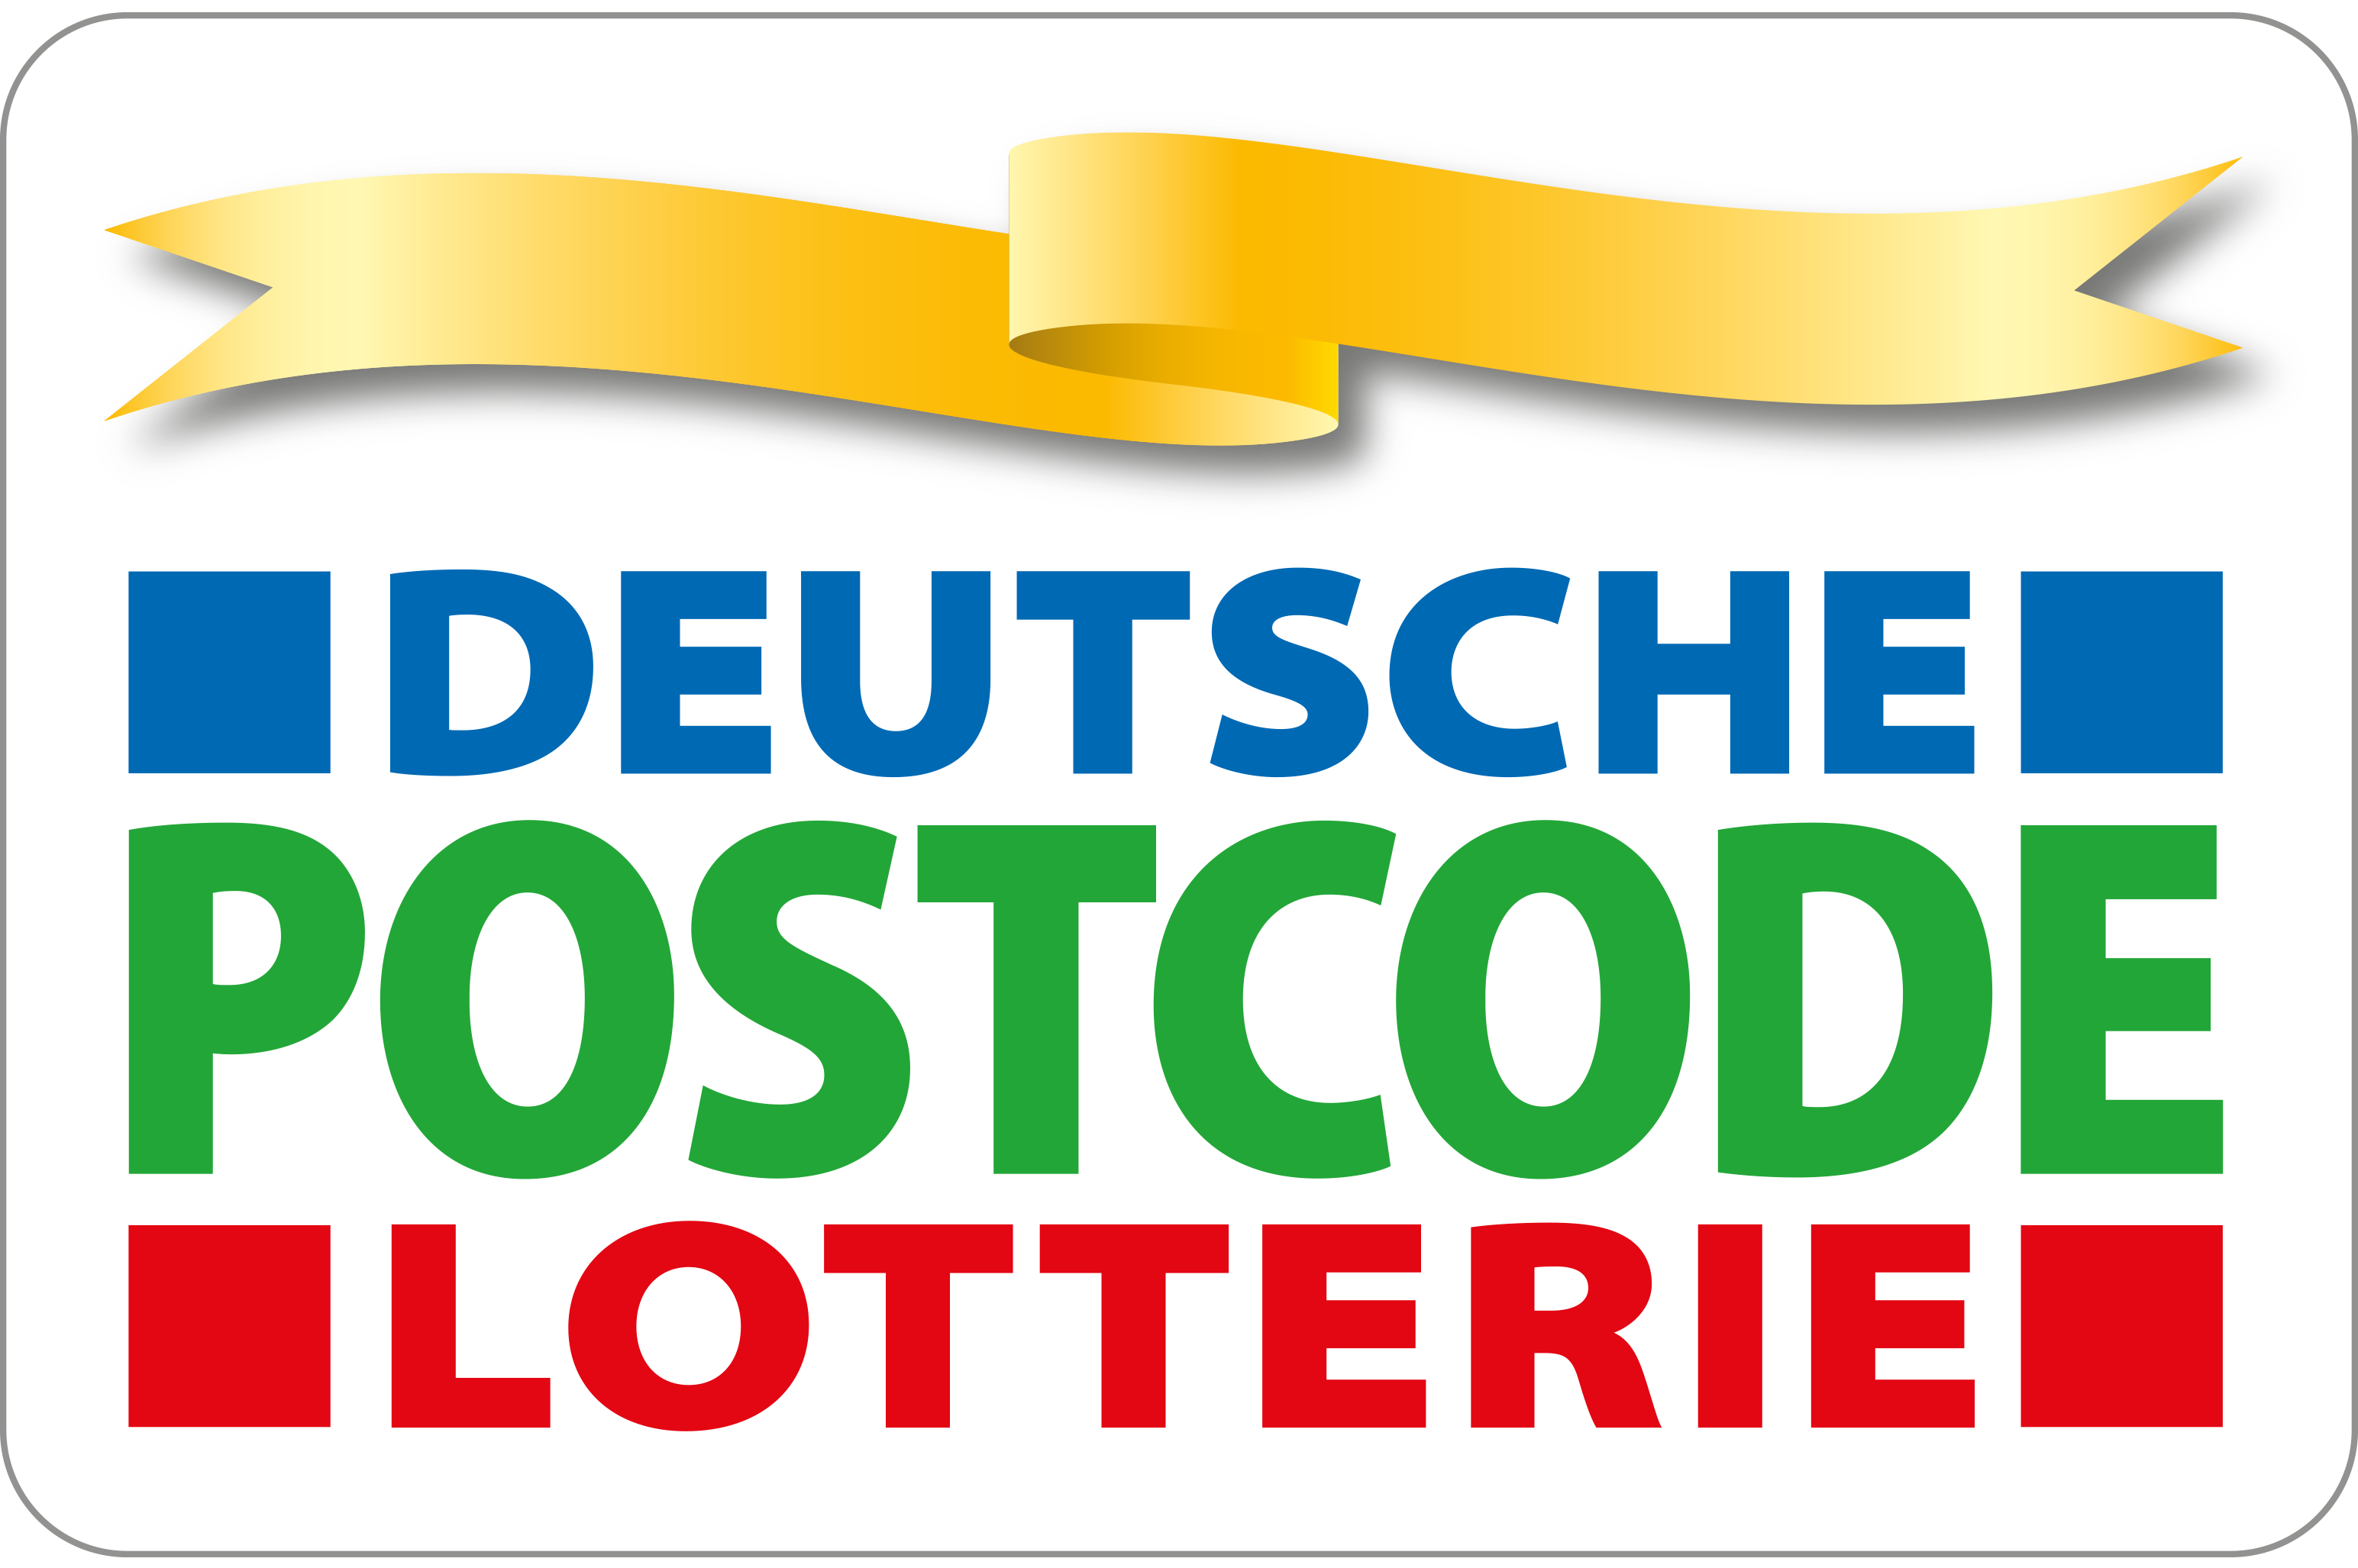 Logo: Deutsche Postcode Lotterie